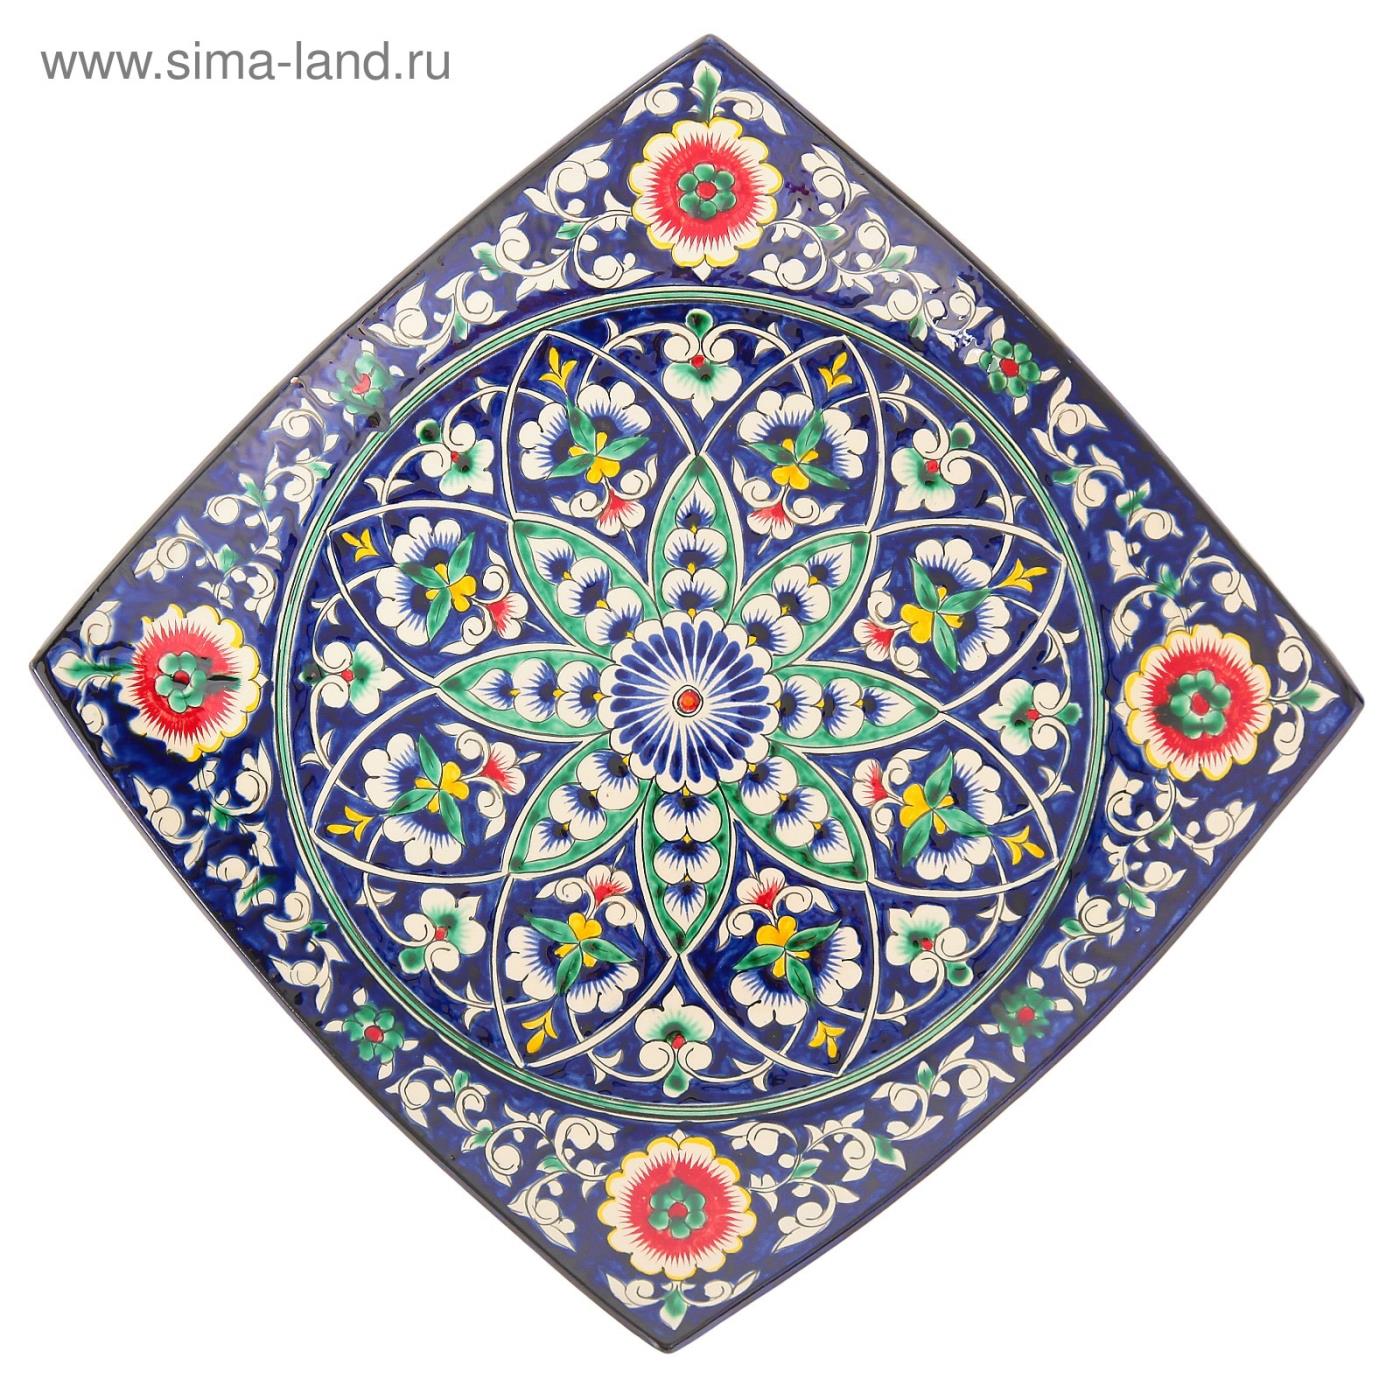 Ляган Шафран Риштанская Керамика Узоры синий квадратный 31 см 1924250